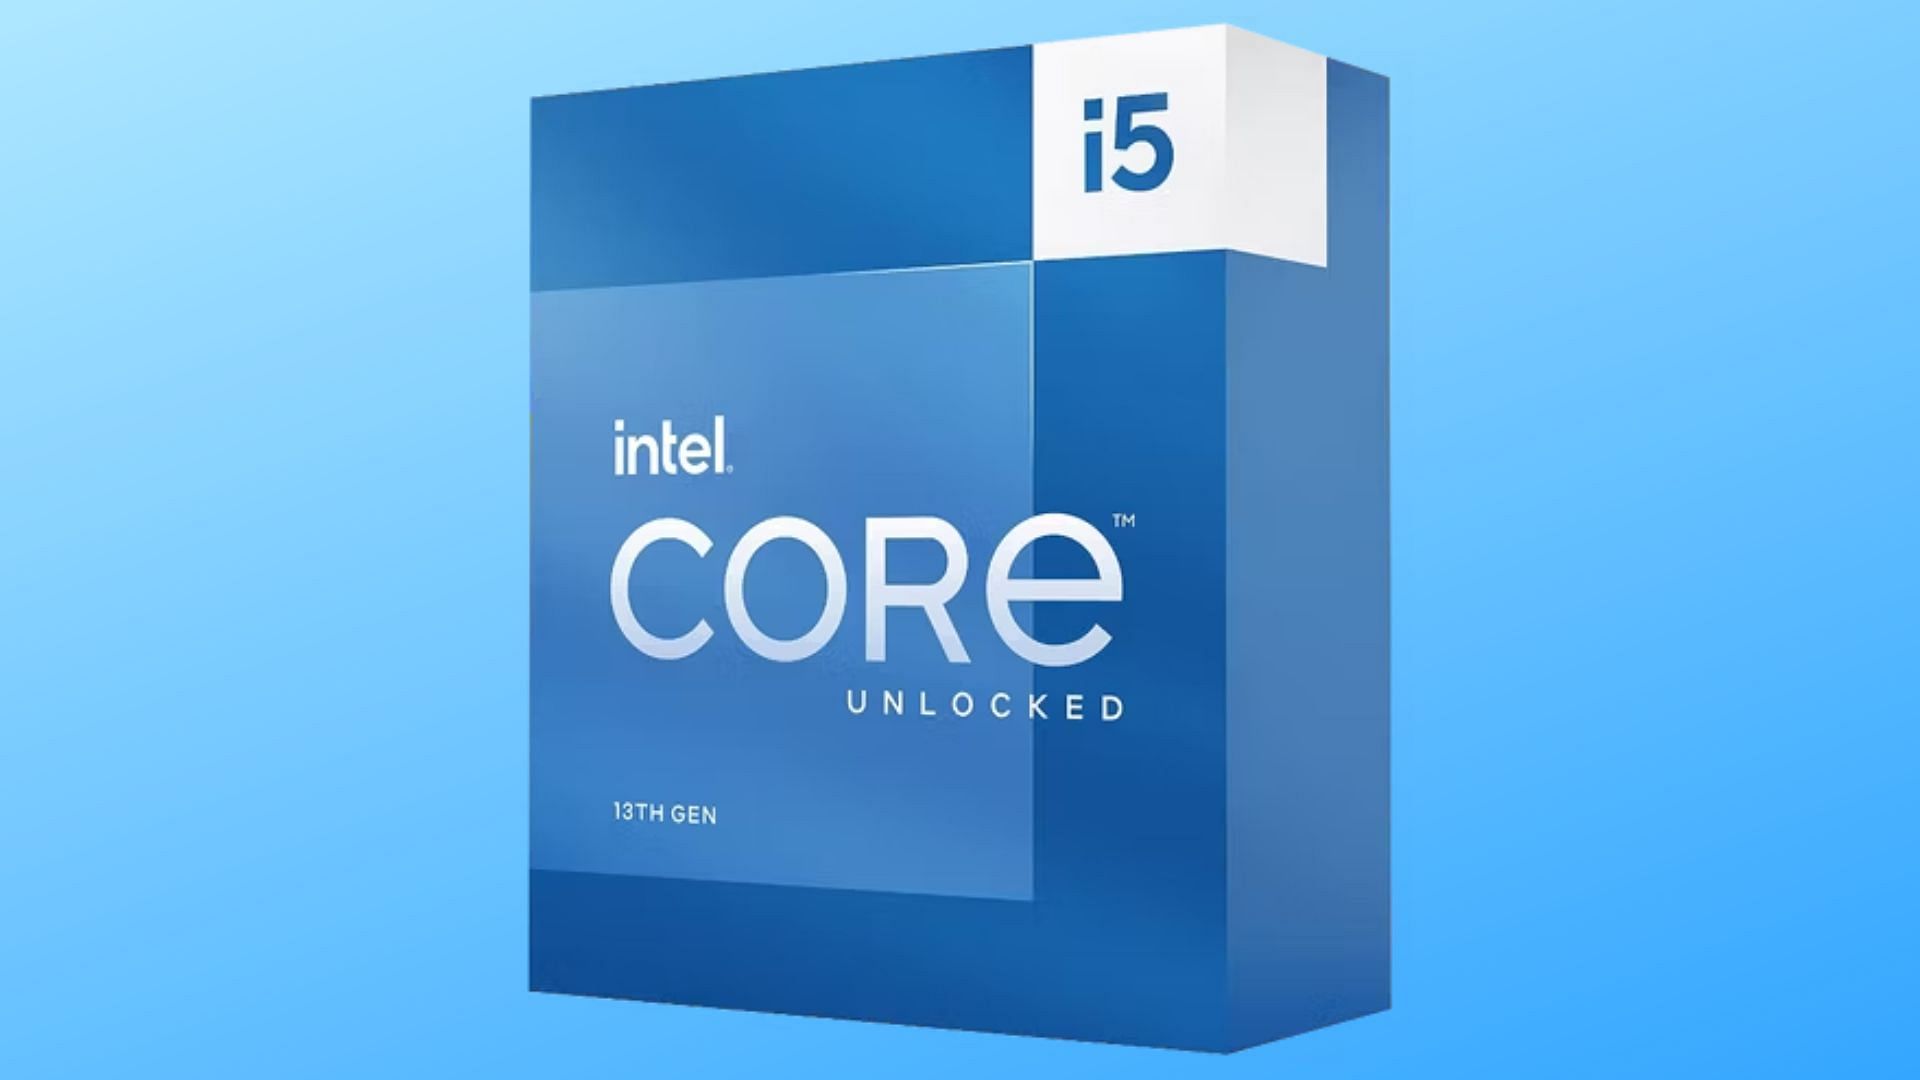 Core i5 box on blue background